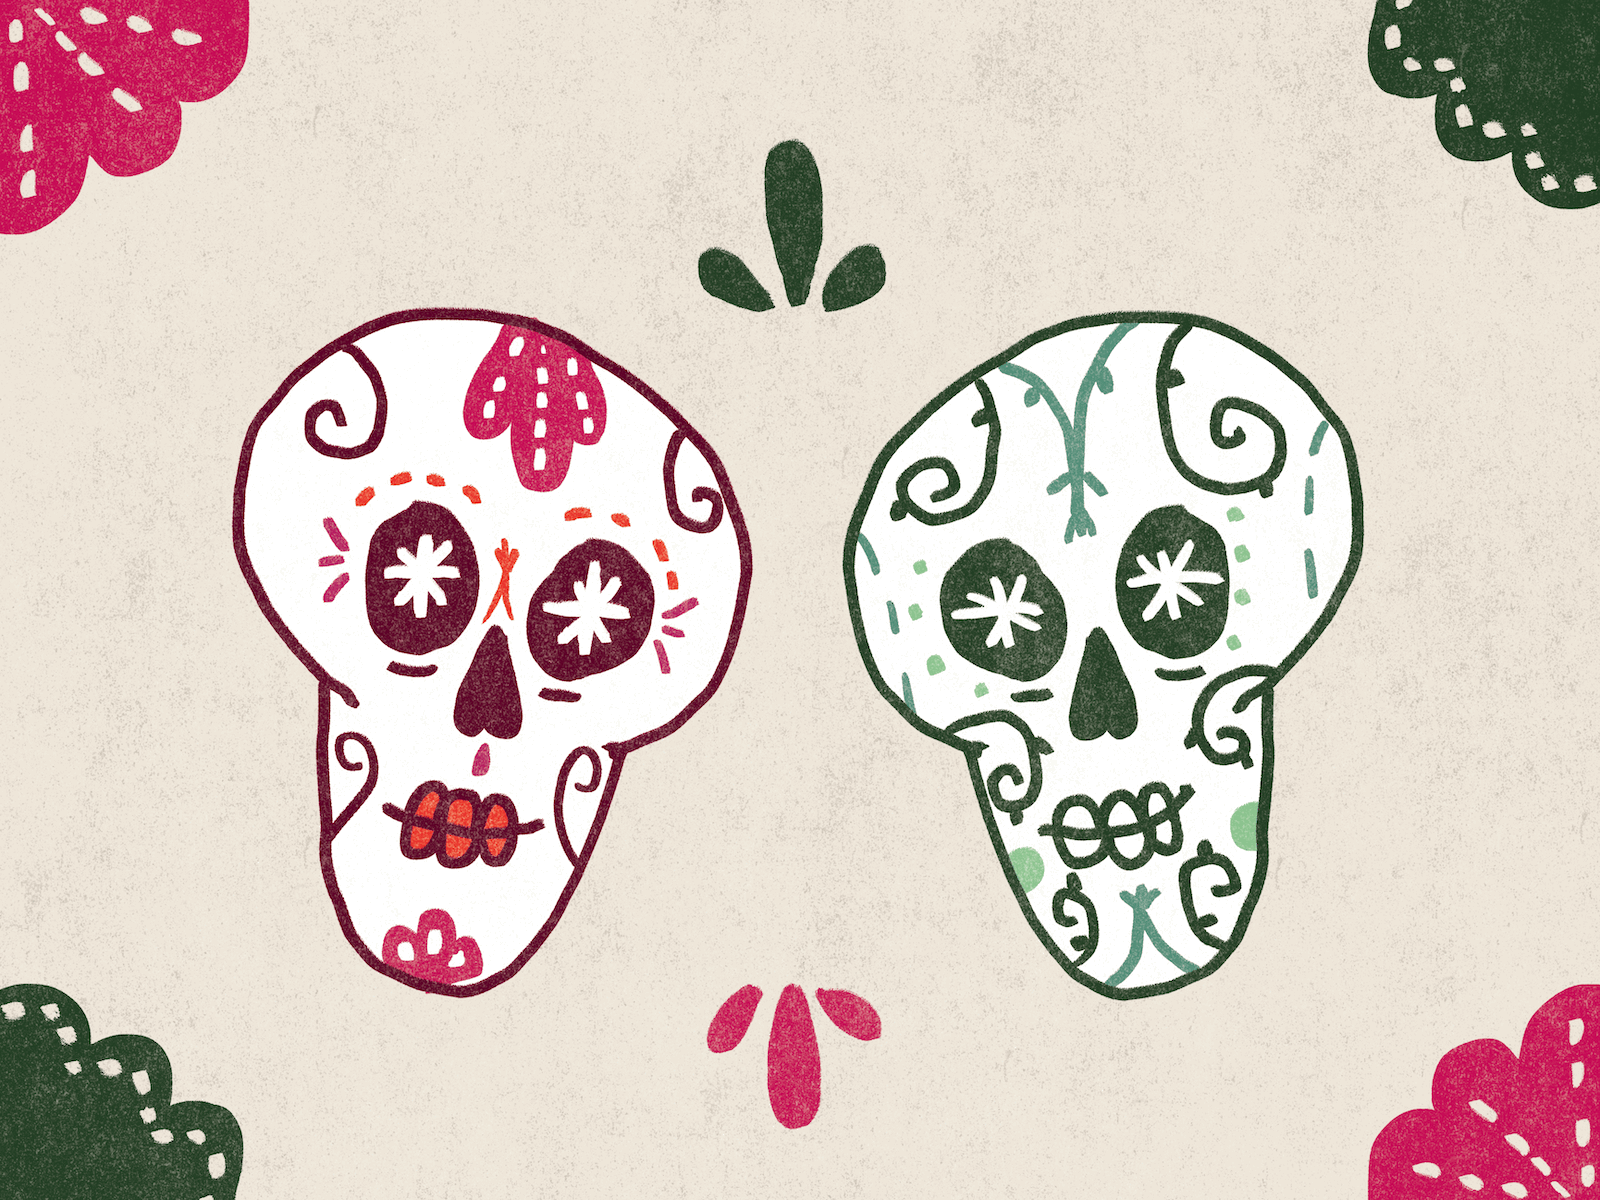 Calaveras calavera colorful day of the dead dia de los muertos graphic design illustration mexico skull